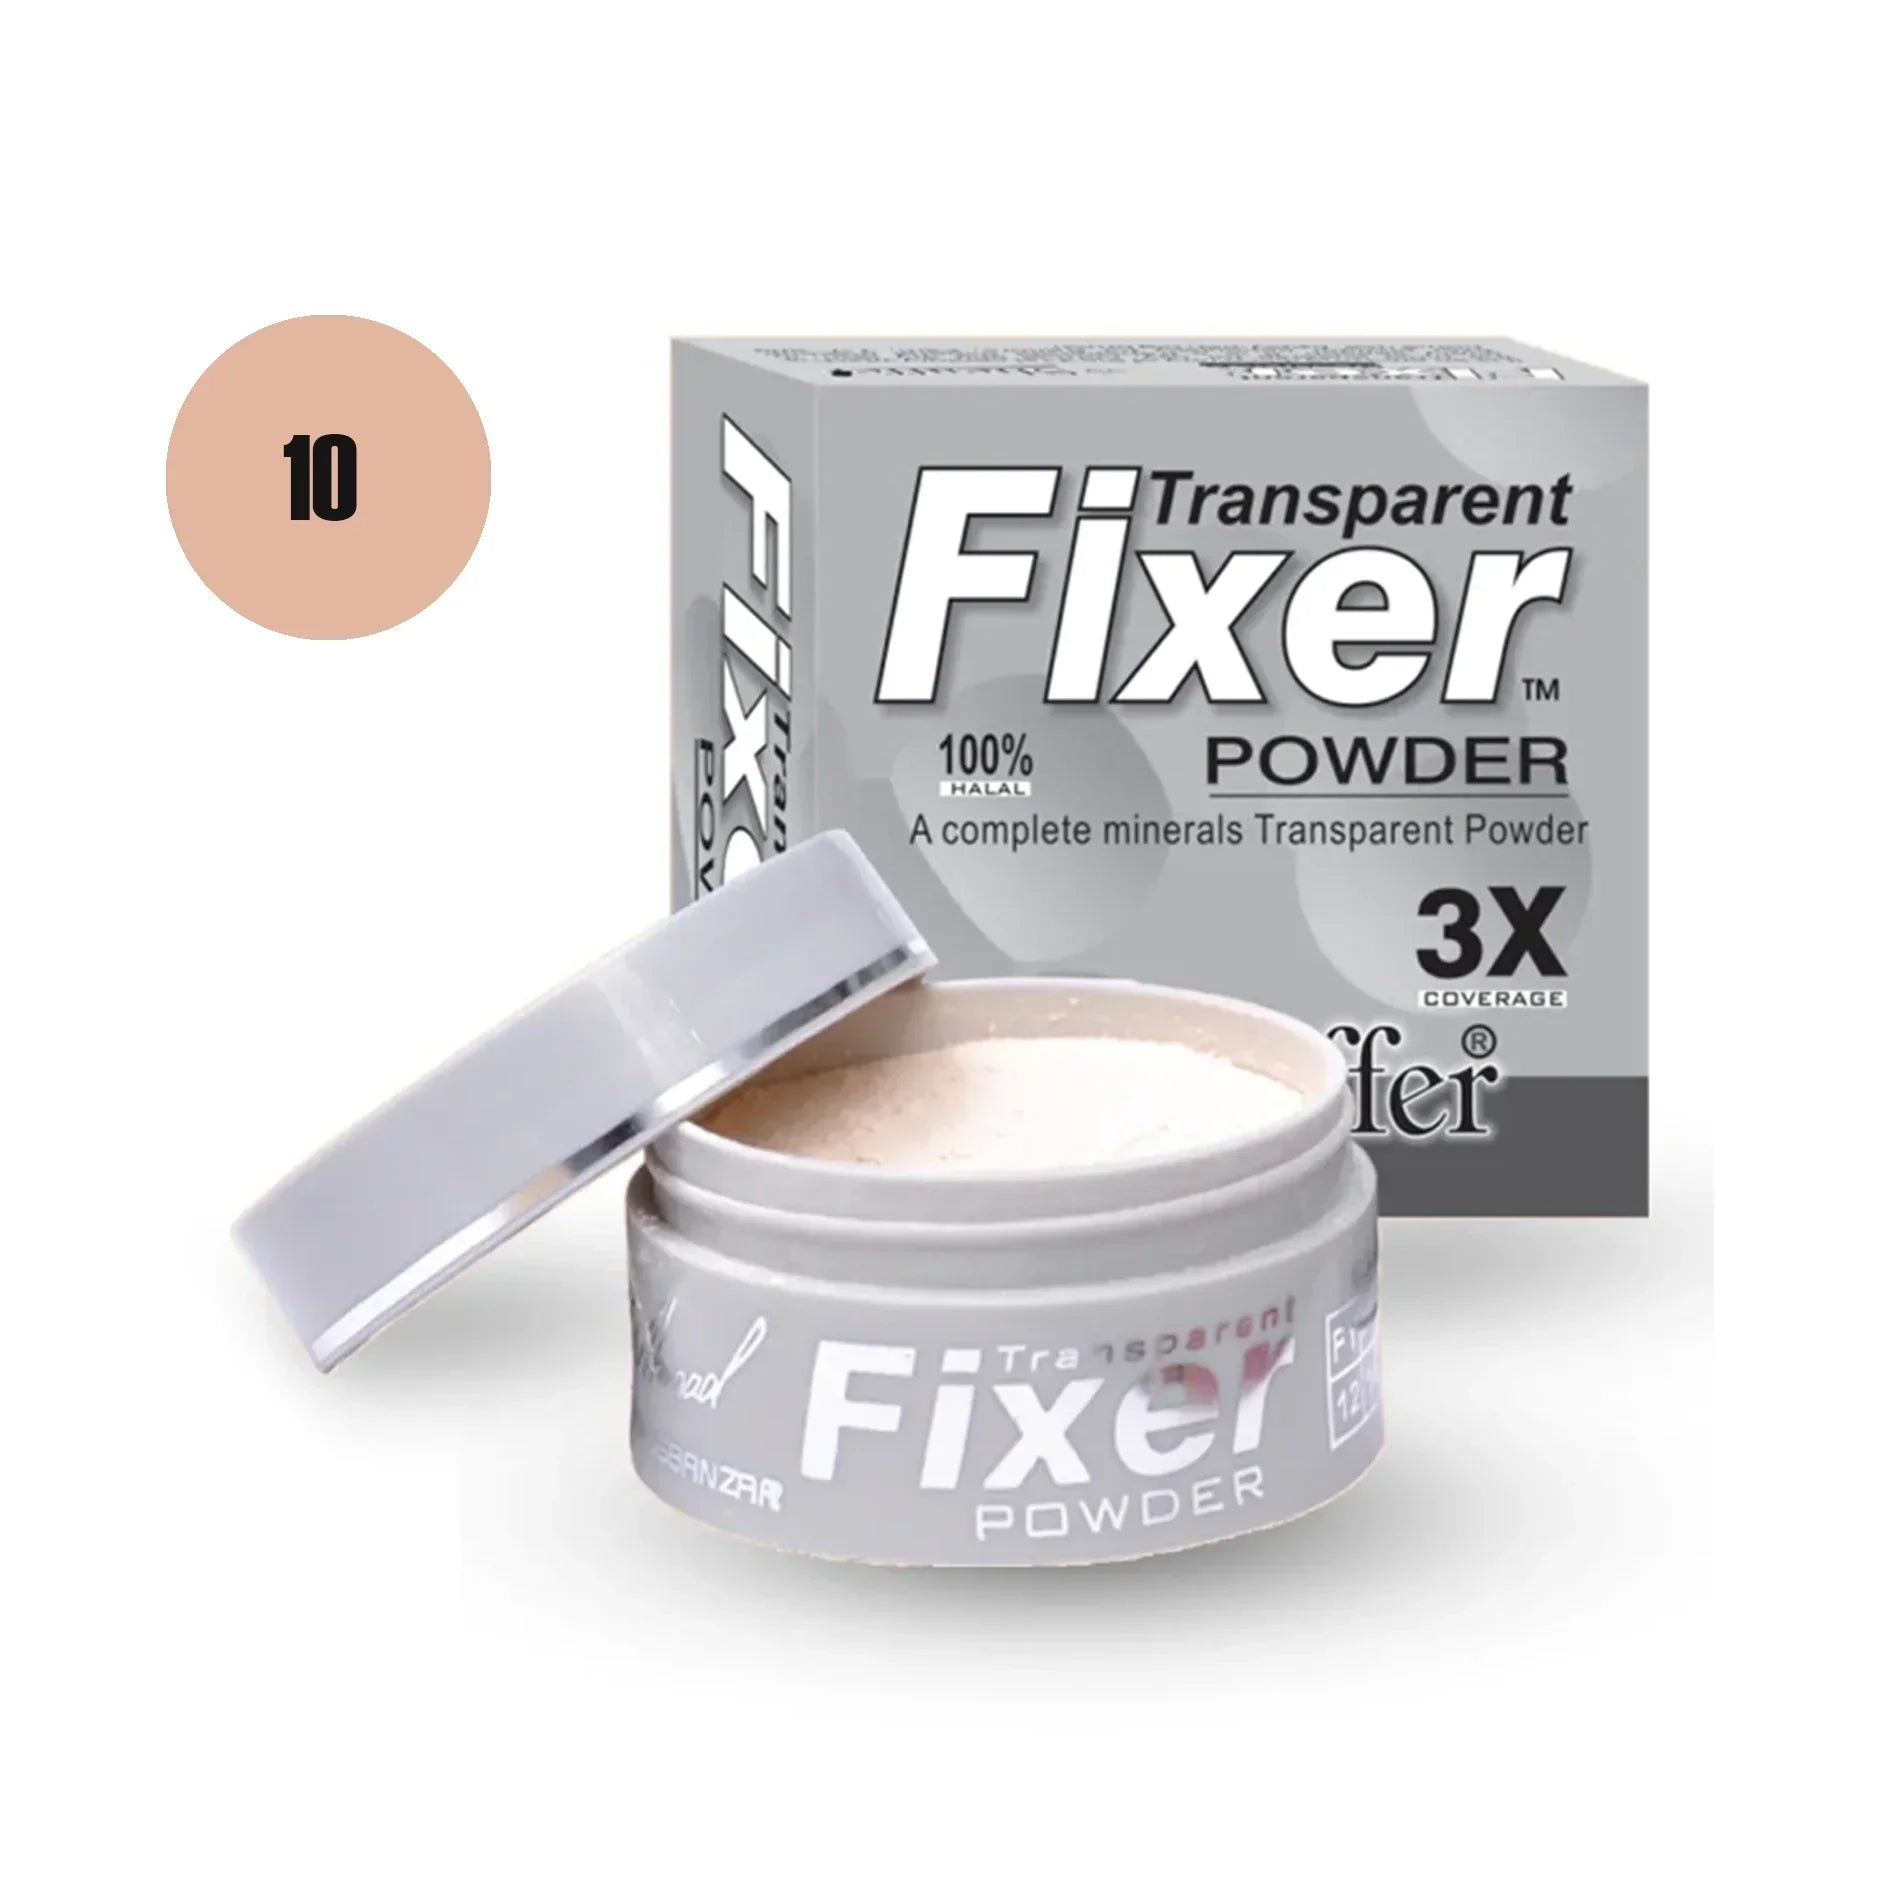 Sheaffer Transparent Fixer Powder Shade No 08 - Retailershop - Online Shopping Center